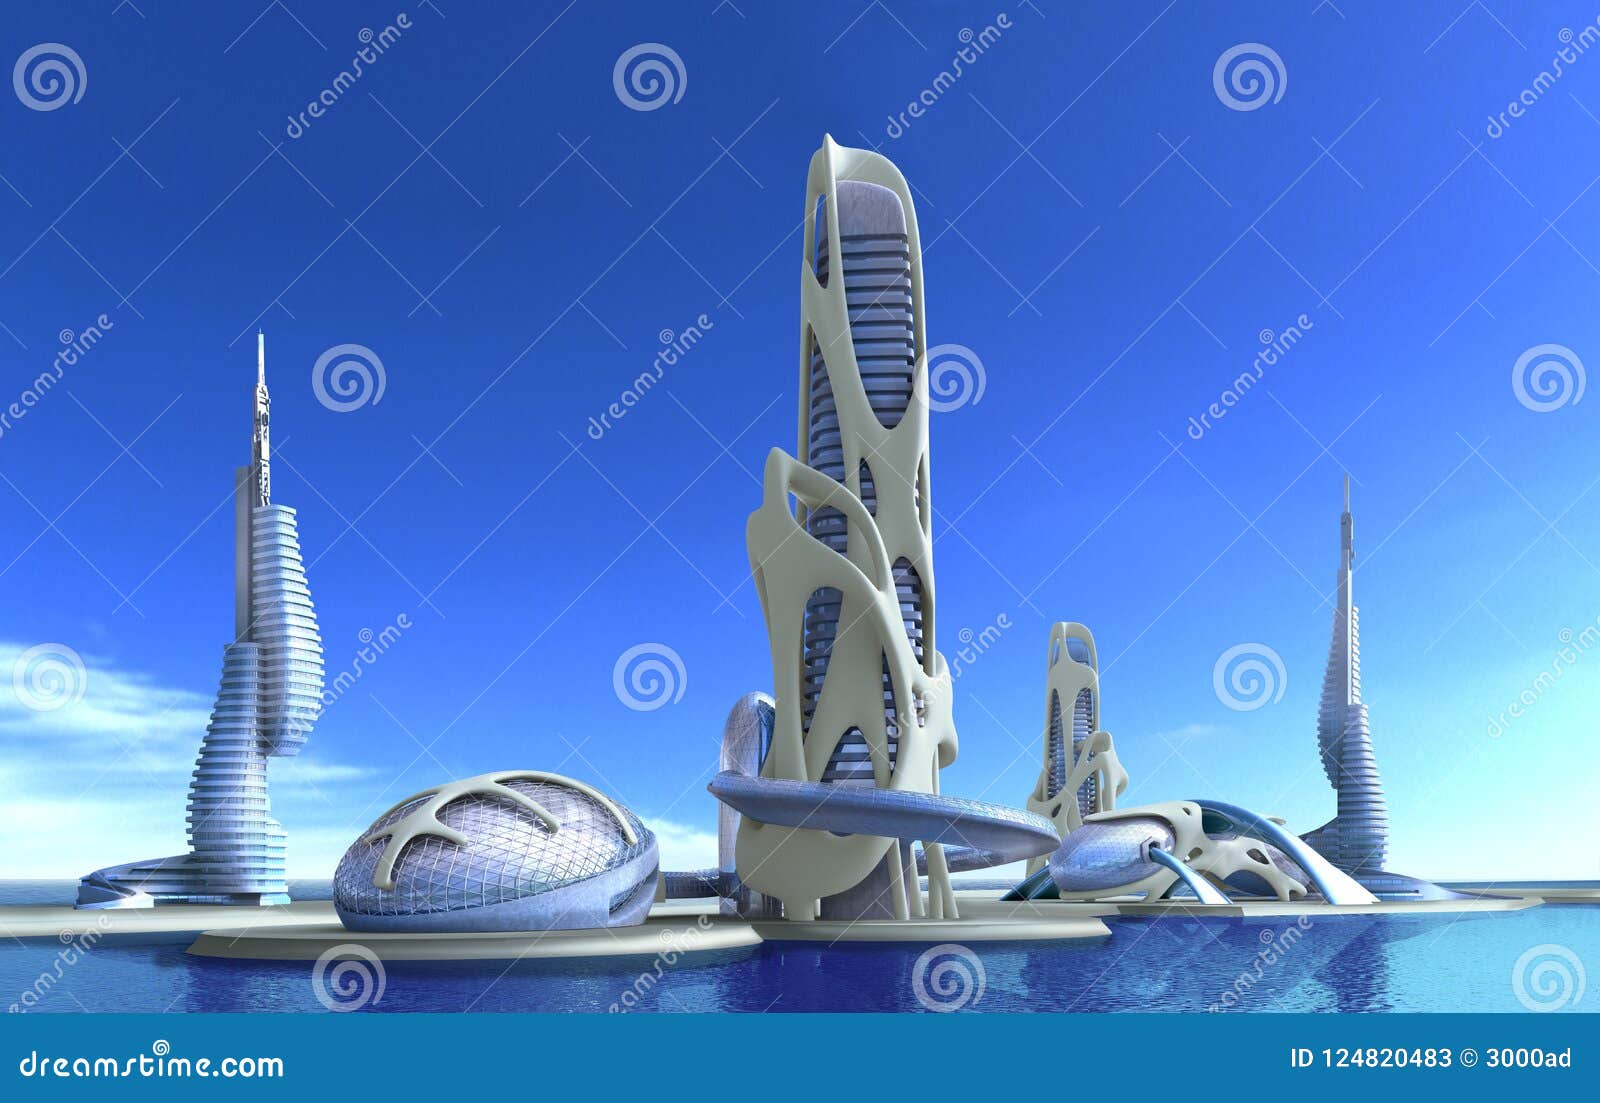 futuristic city architecture for fantasy and science fiction ill